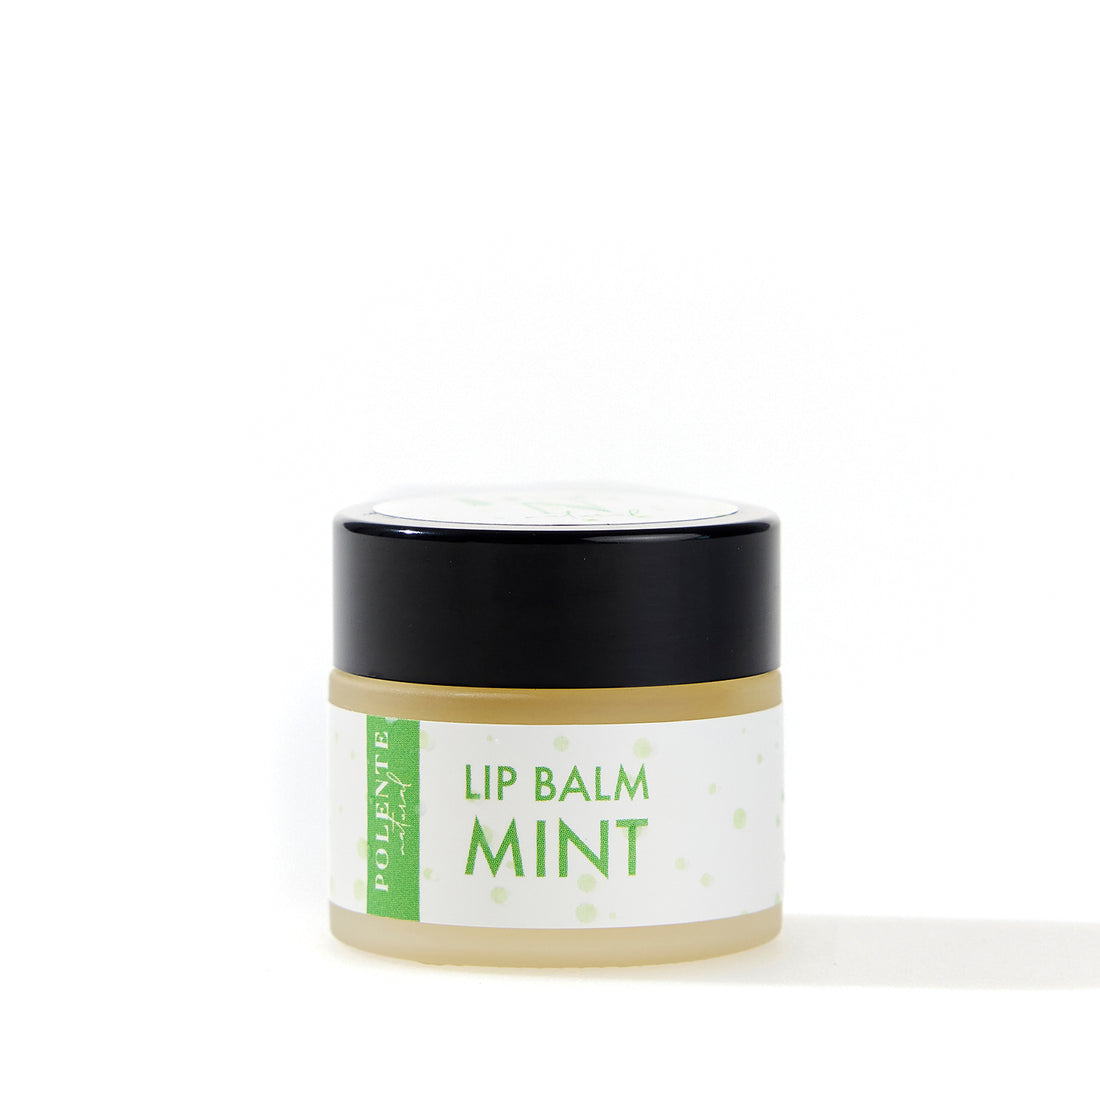 Mint Lip Balm - Увлажняющий крем для губ